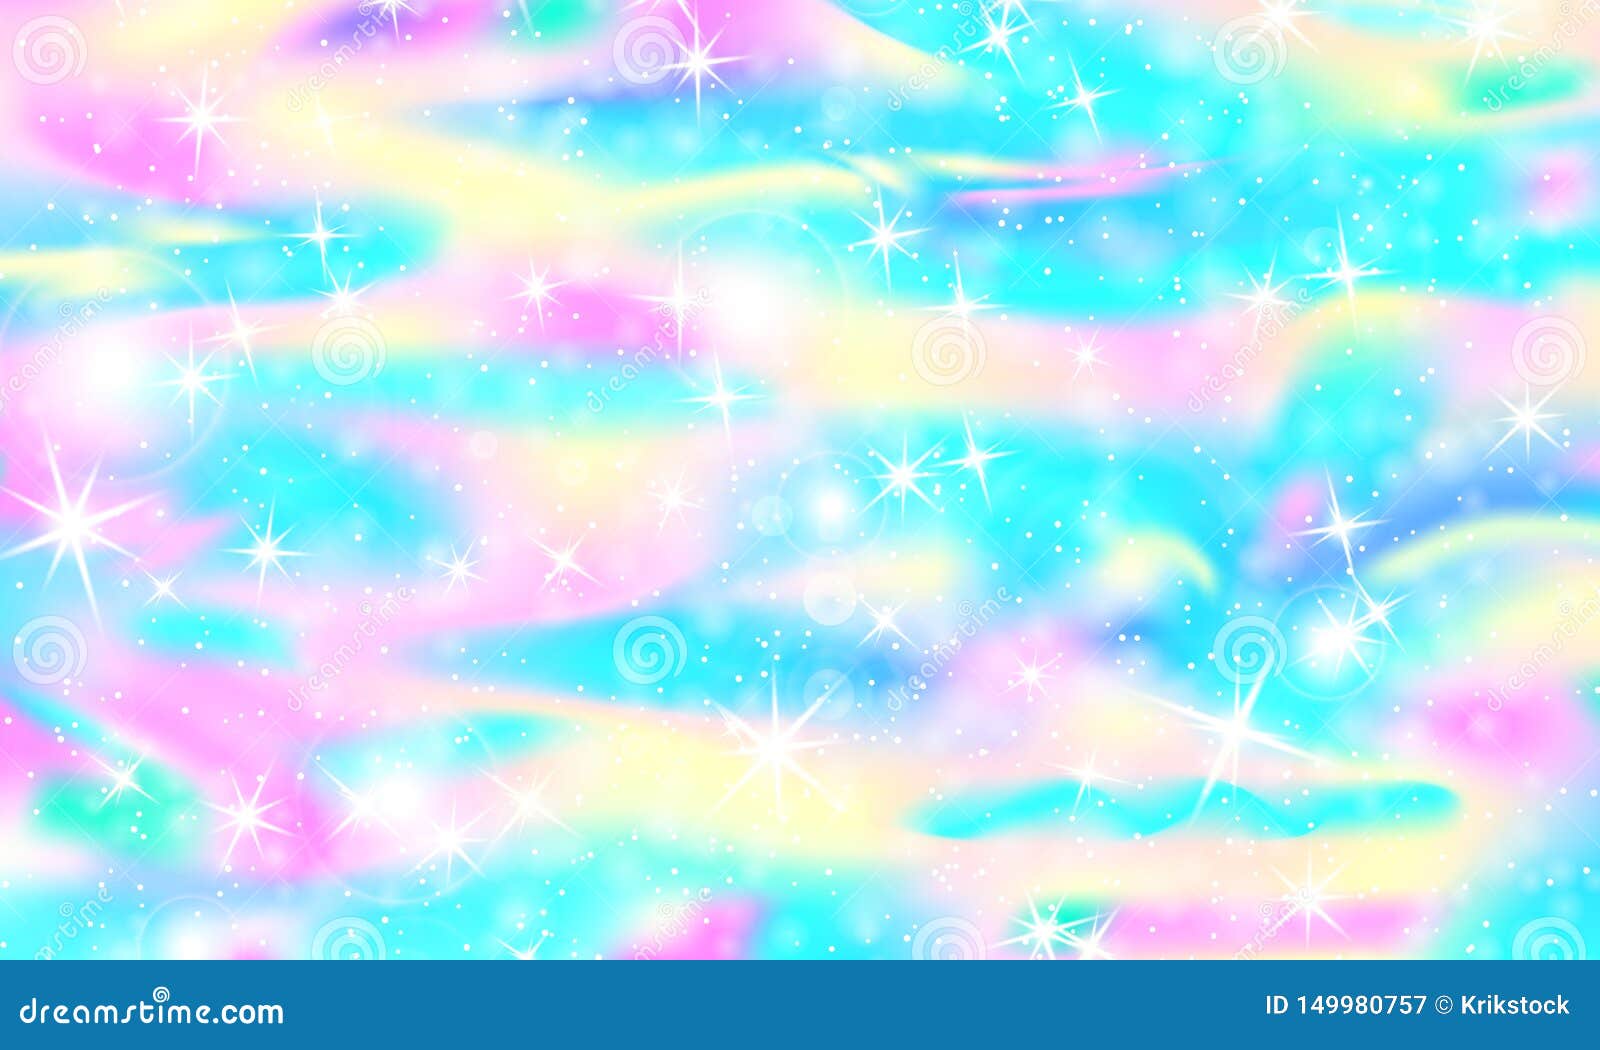 Thưởng thức vector nền tảng với chủ đề Unicorn Rainbow Mermaid, mang đến cho bạn một thế giới đầy phong cách và màu sắc. Với hình ảnh những con ngựa đáng yêu và hình ảnh tiên cá lộng lẫy, bạn sẽ hoàn toàn chìm đắm trong không gian ảo tưởng đầy tuyệt vời.